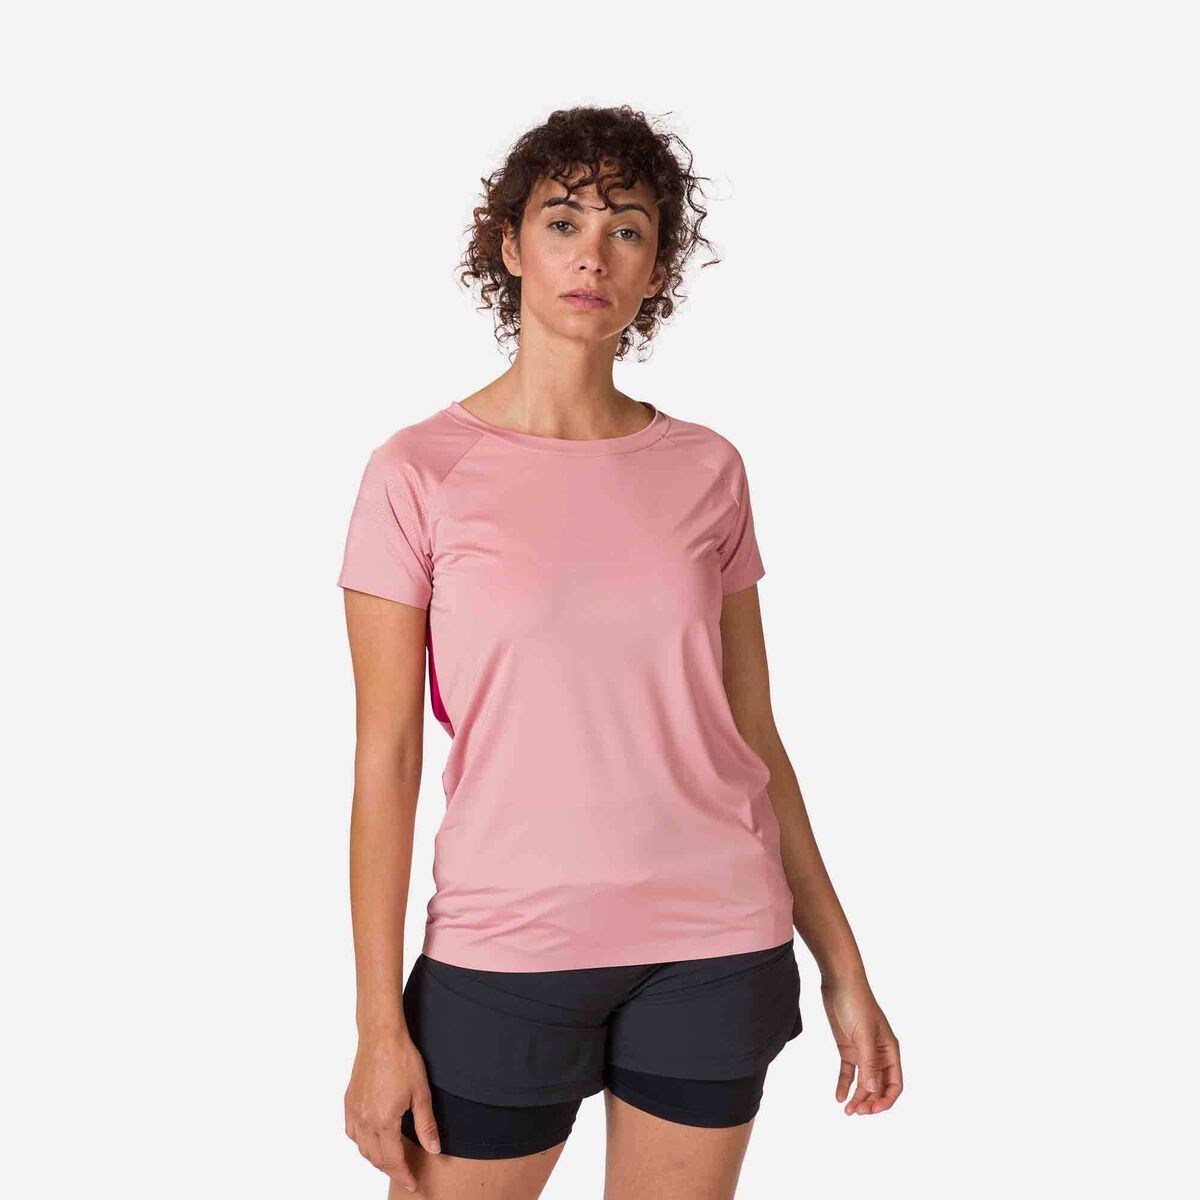 Sporty-Camiseta mujer-140g Sporty women